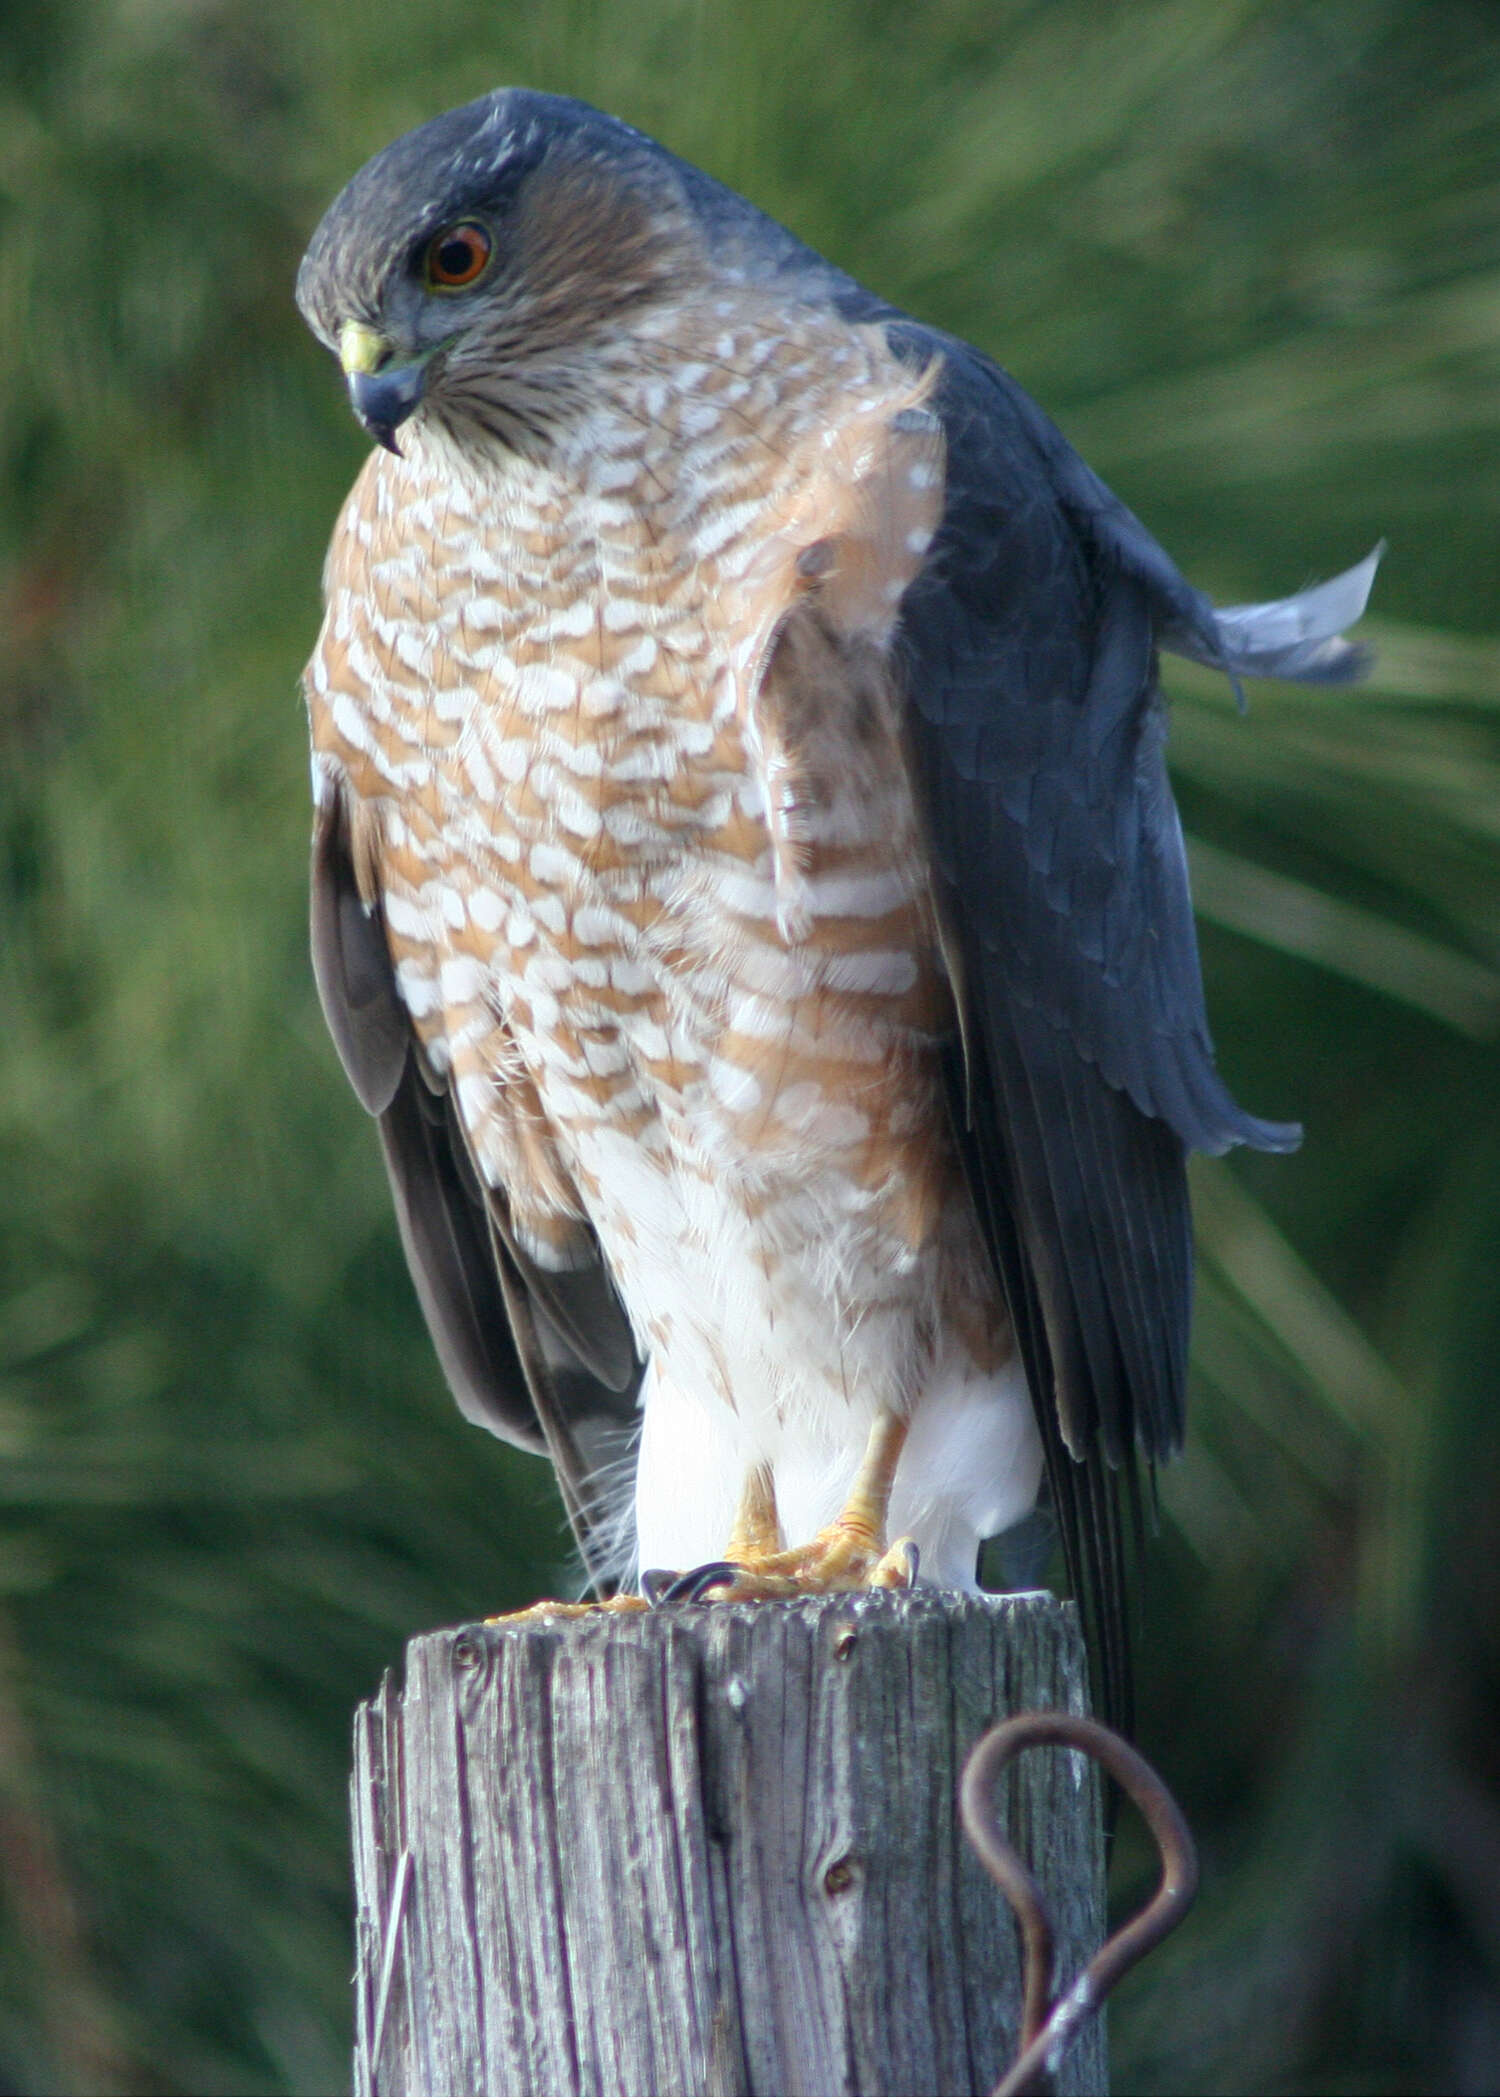 Image of Cooper's Hawk